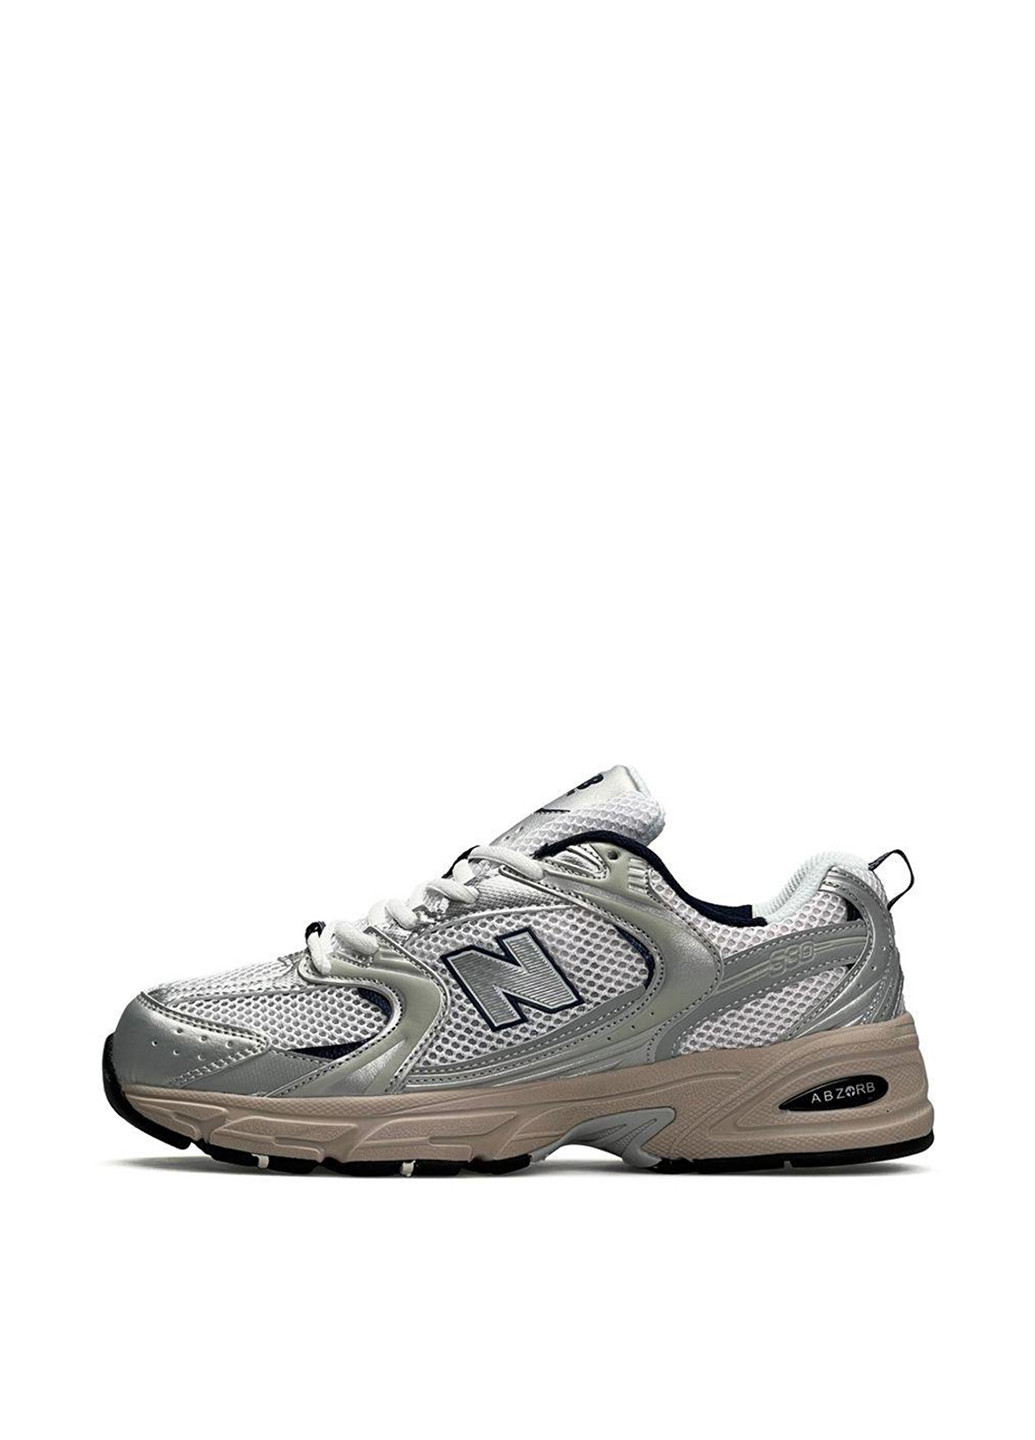 Цветные демисезонные кроссовки New Balance 530 Silver Beige Men’s Premium